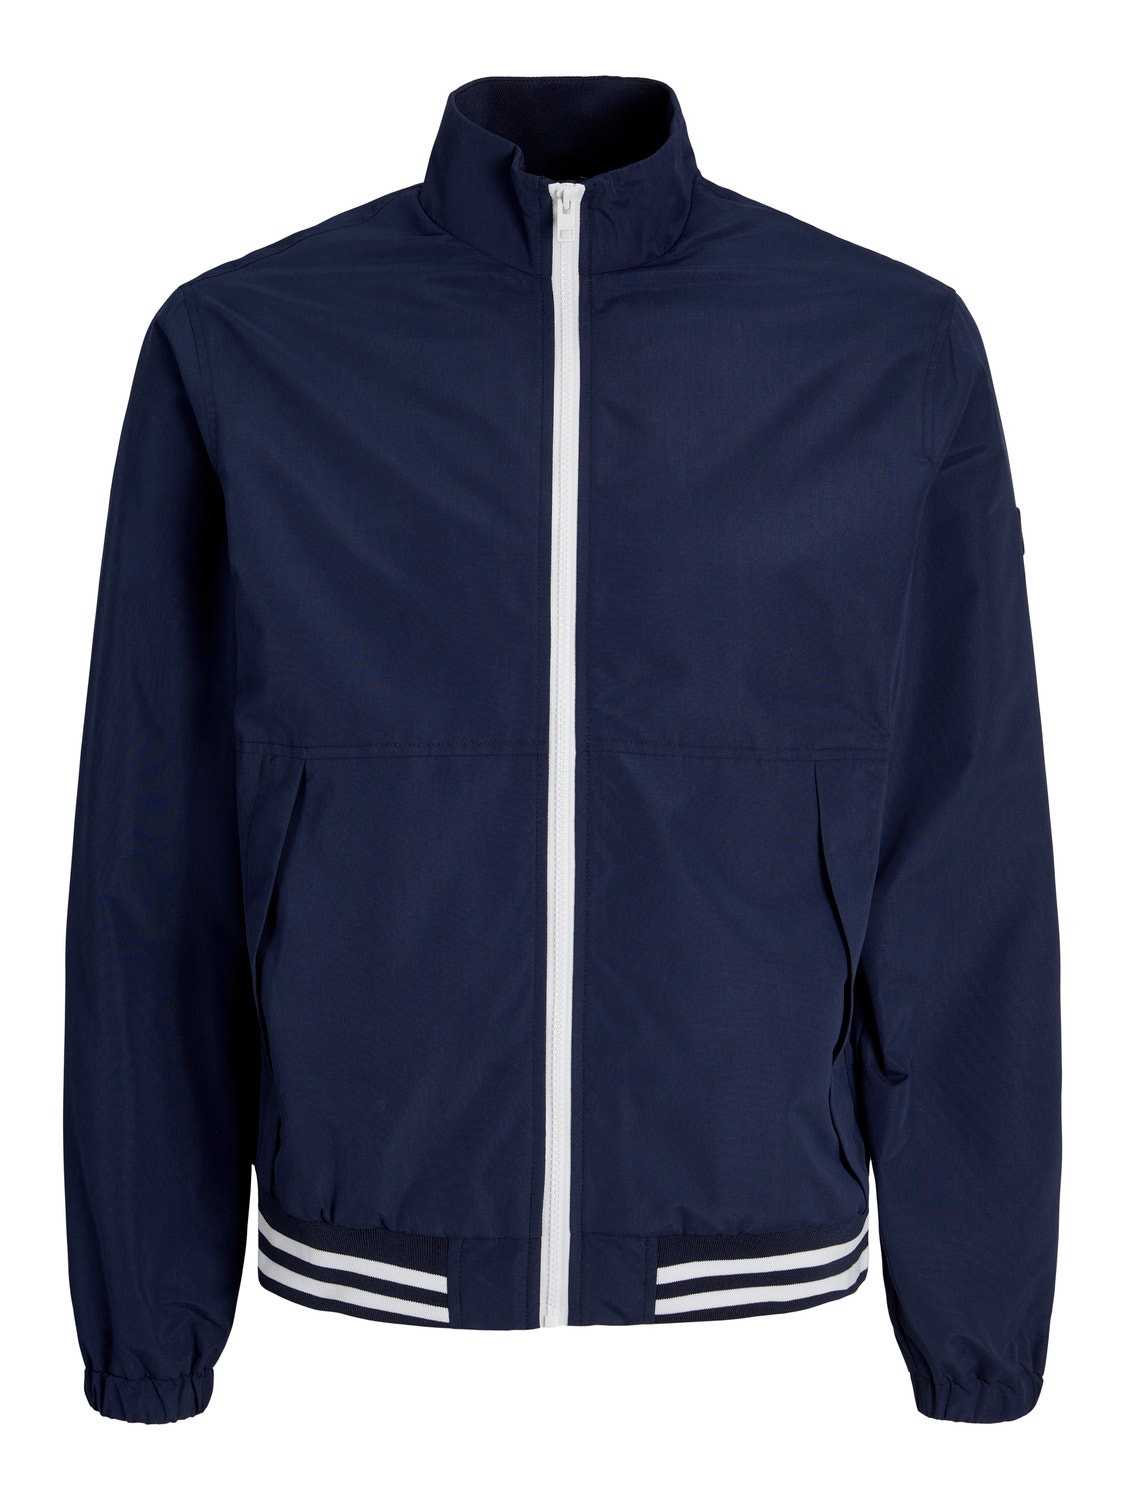 Jack & Jones Bomber jacket -Dark Navy - 12249368